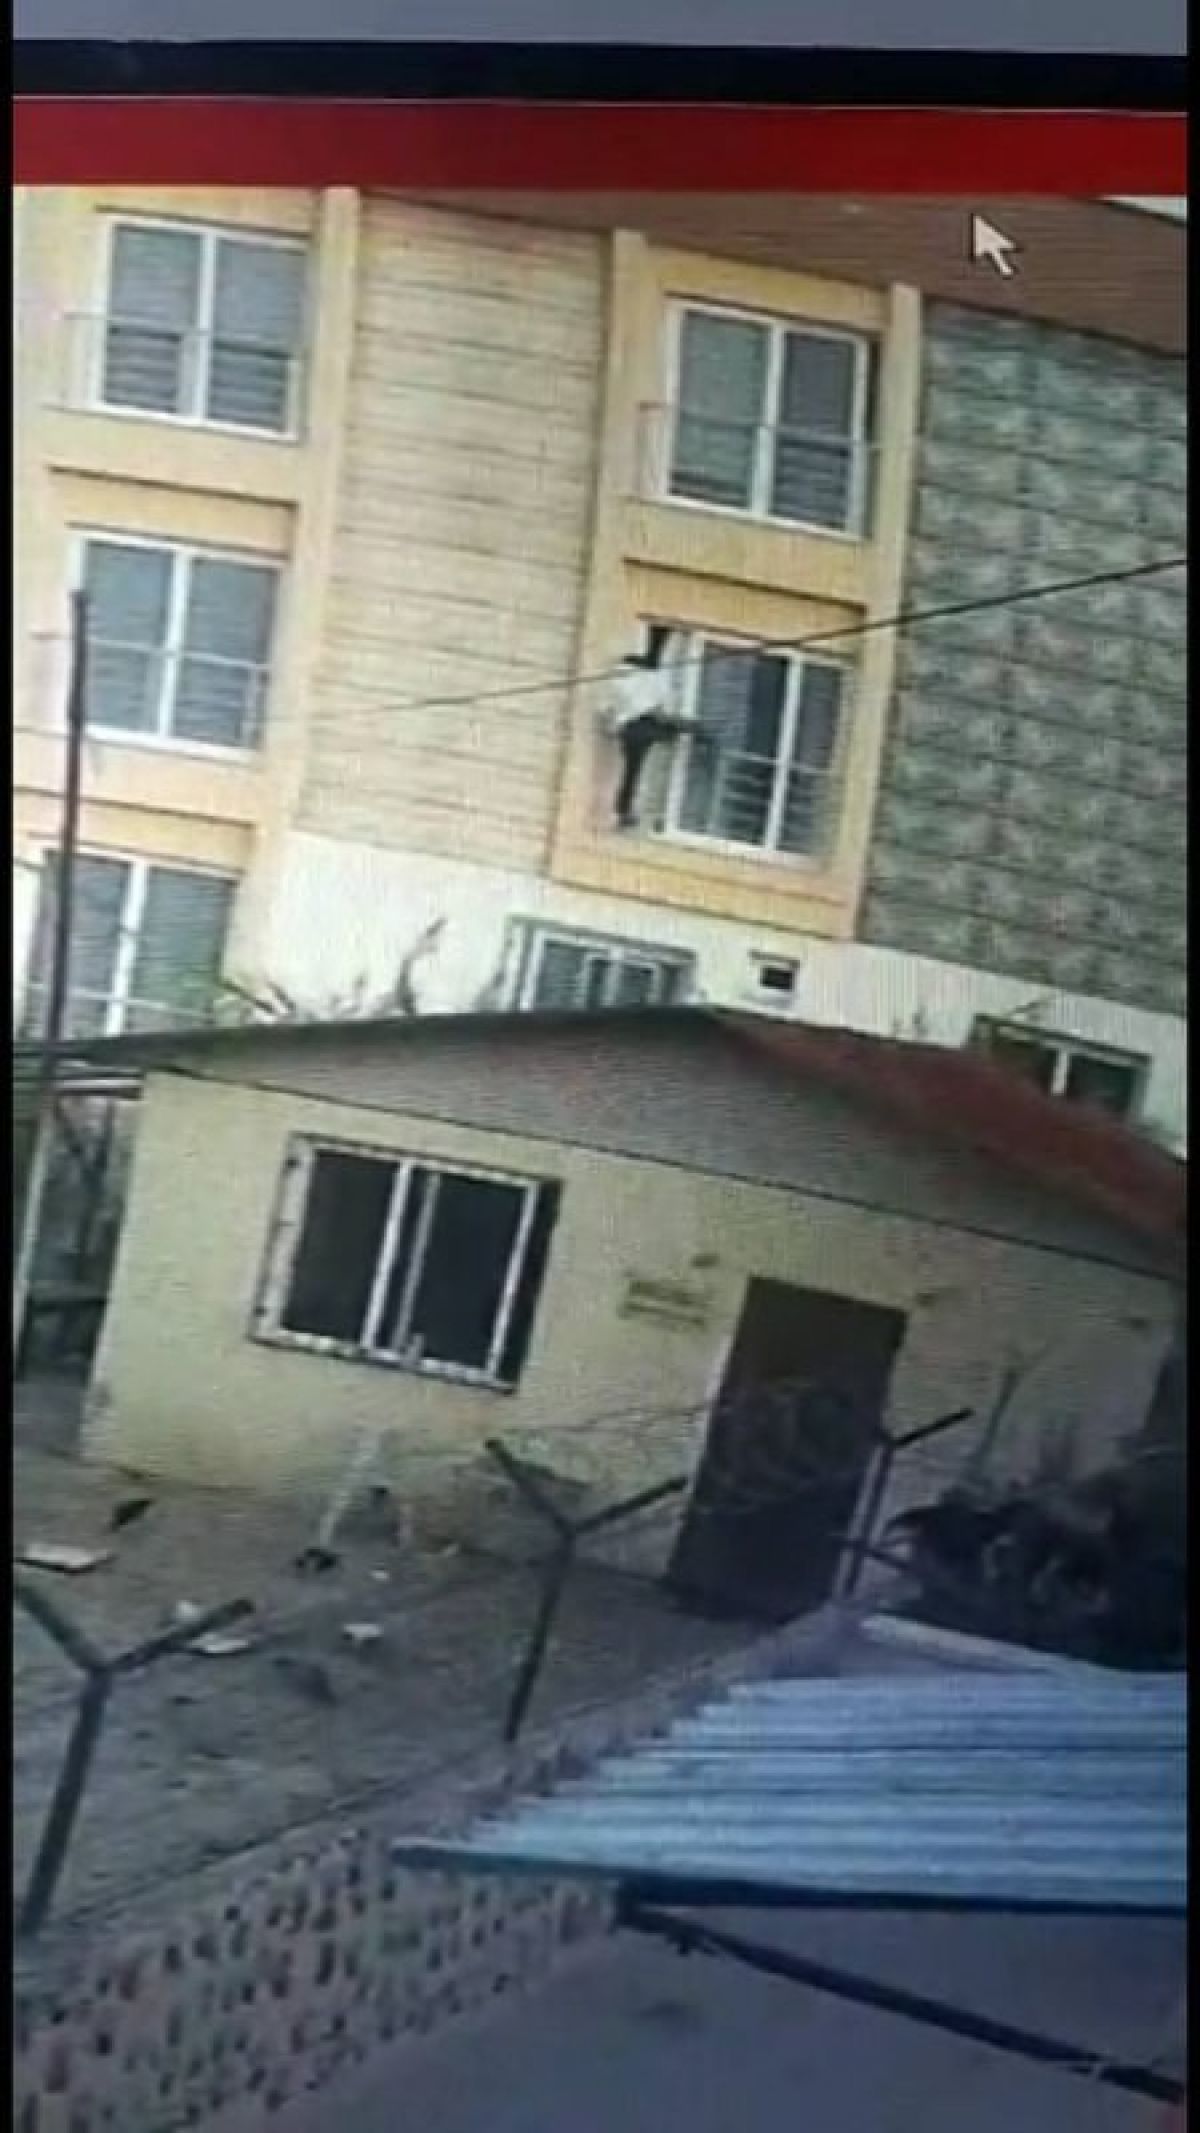 Mersin de ev sahibini gören hırsız, camdan atladı #3